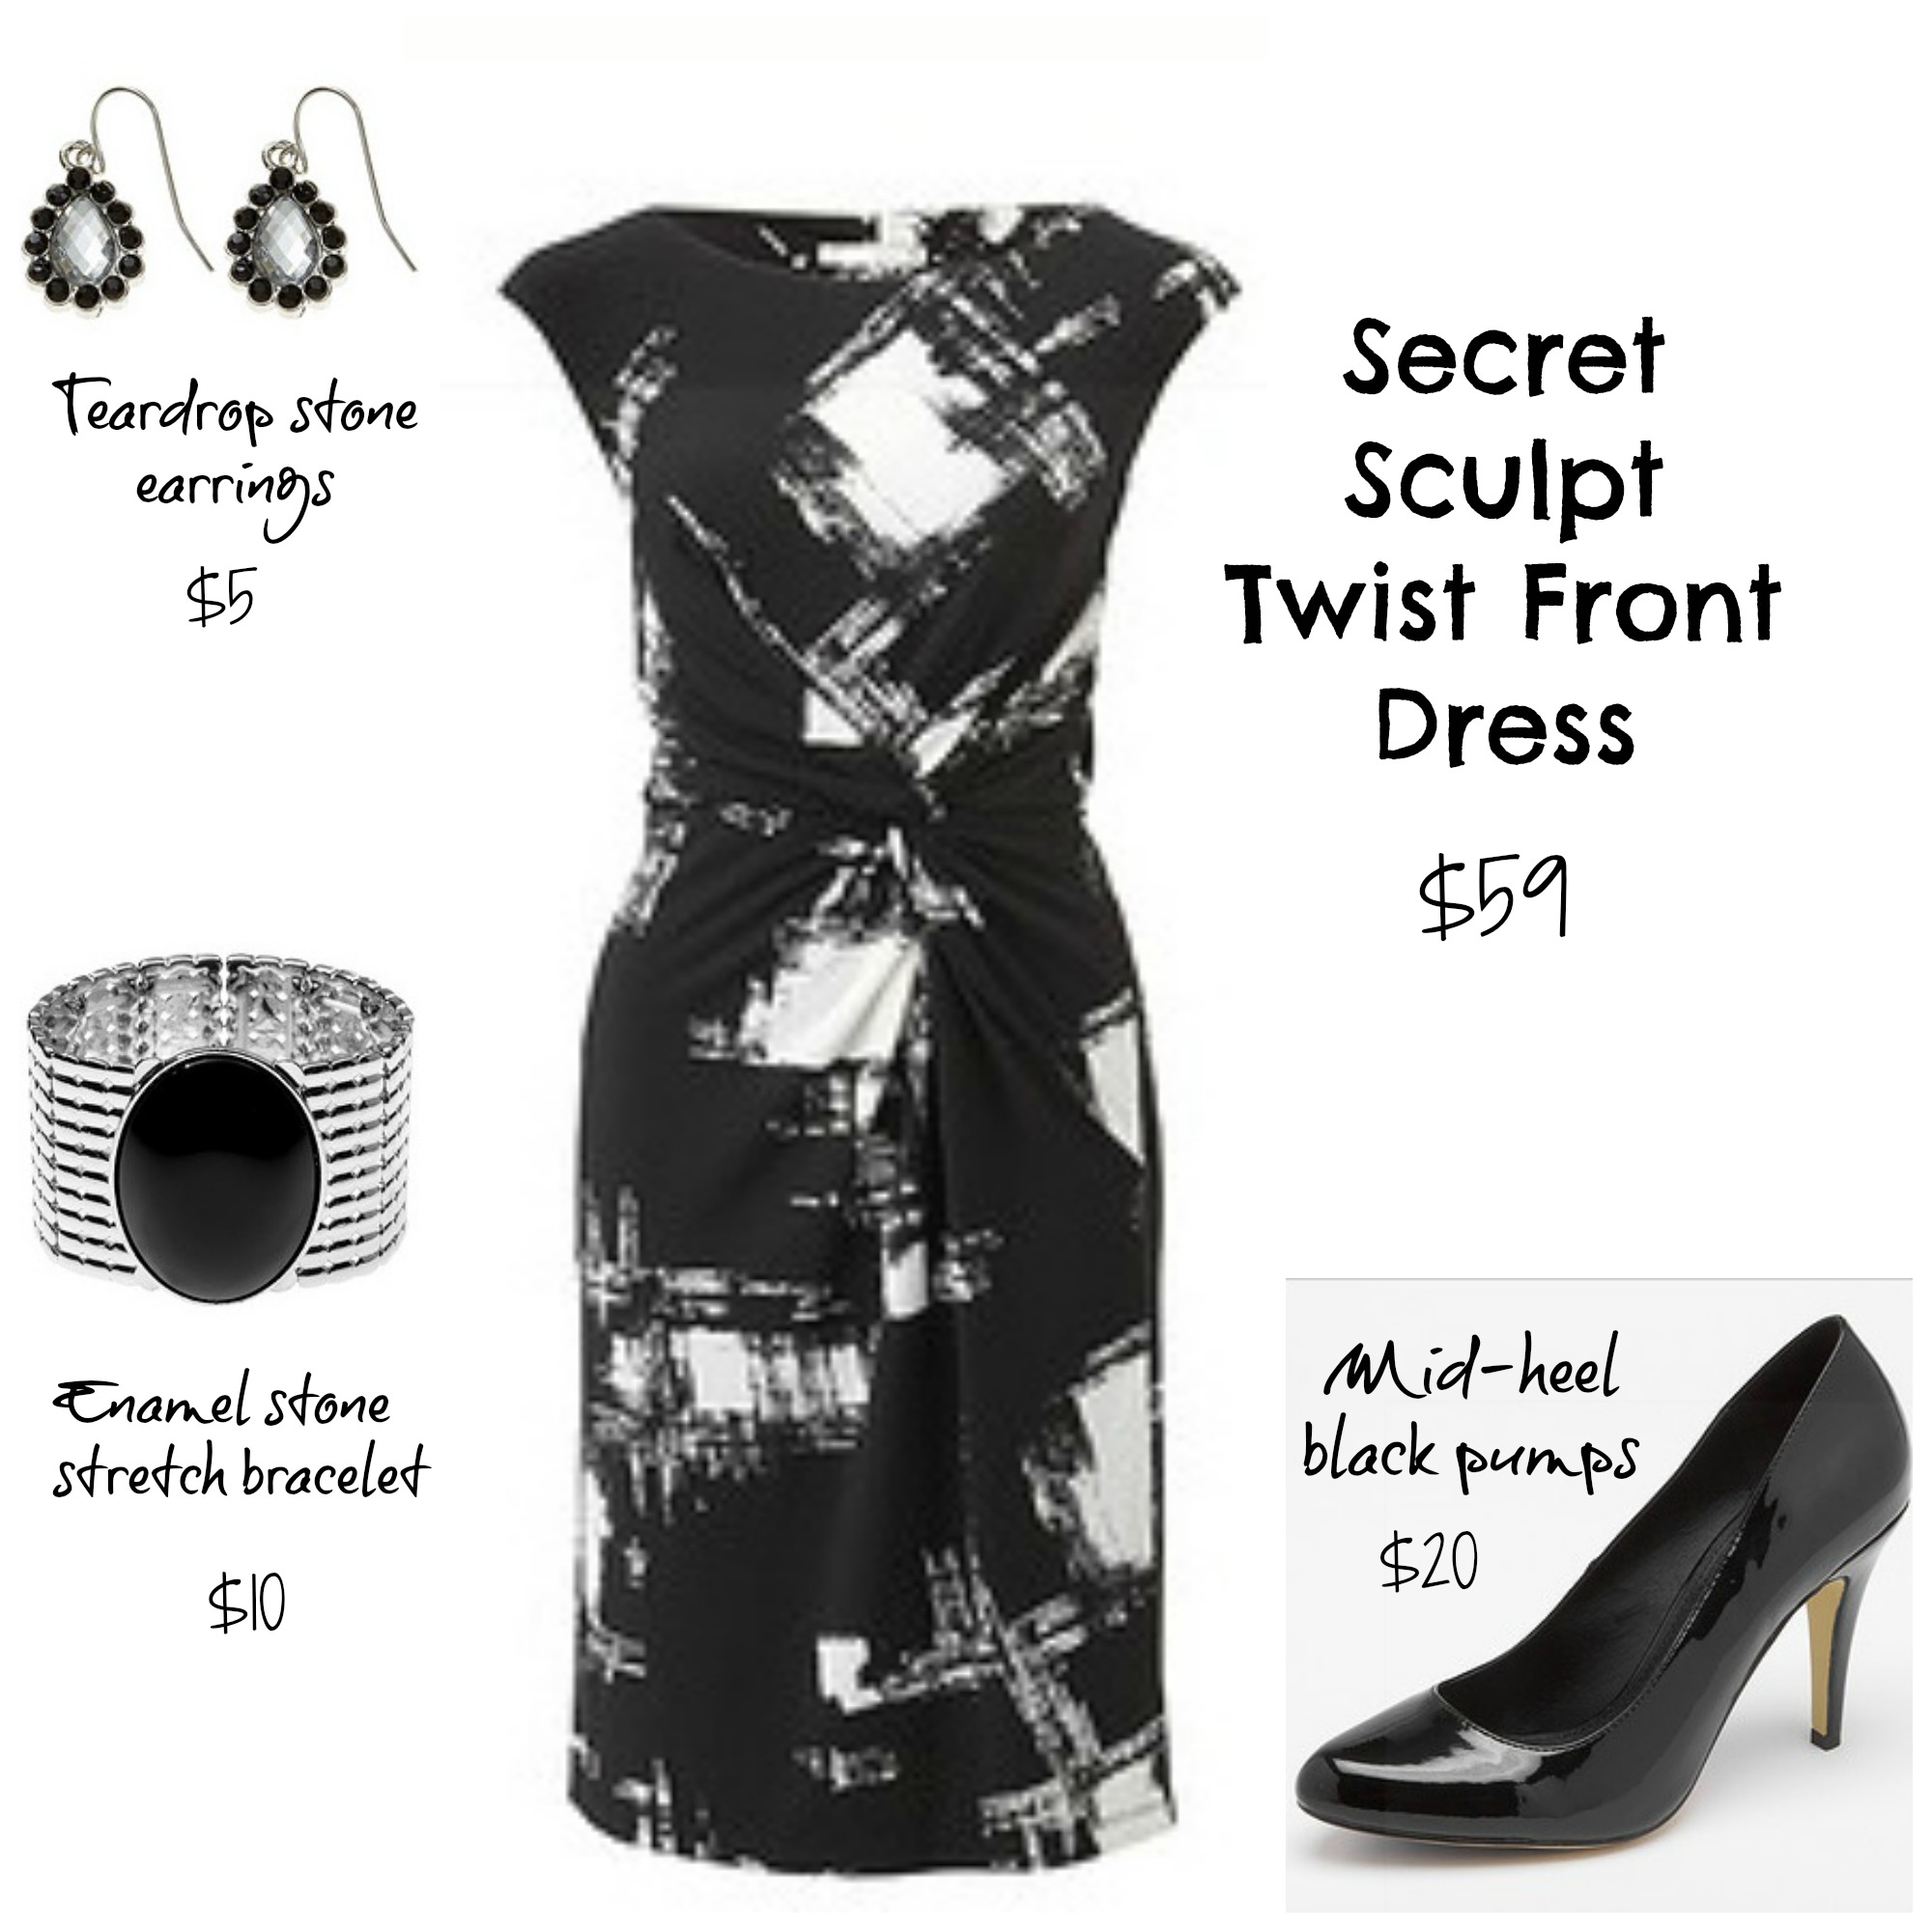 Target Secret Sculpt Twist Front Dress